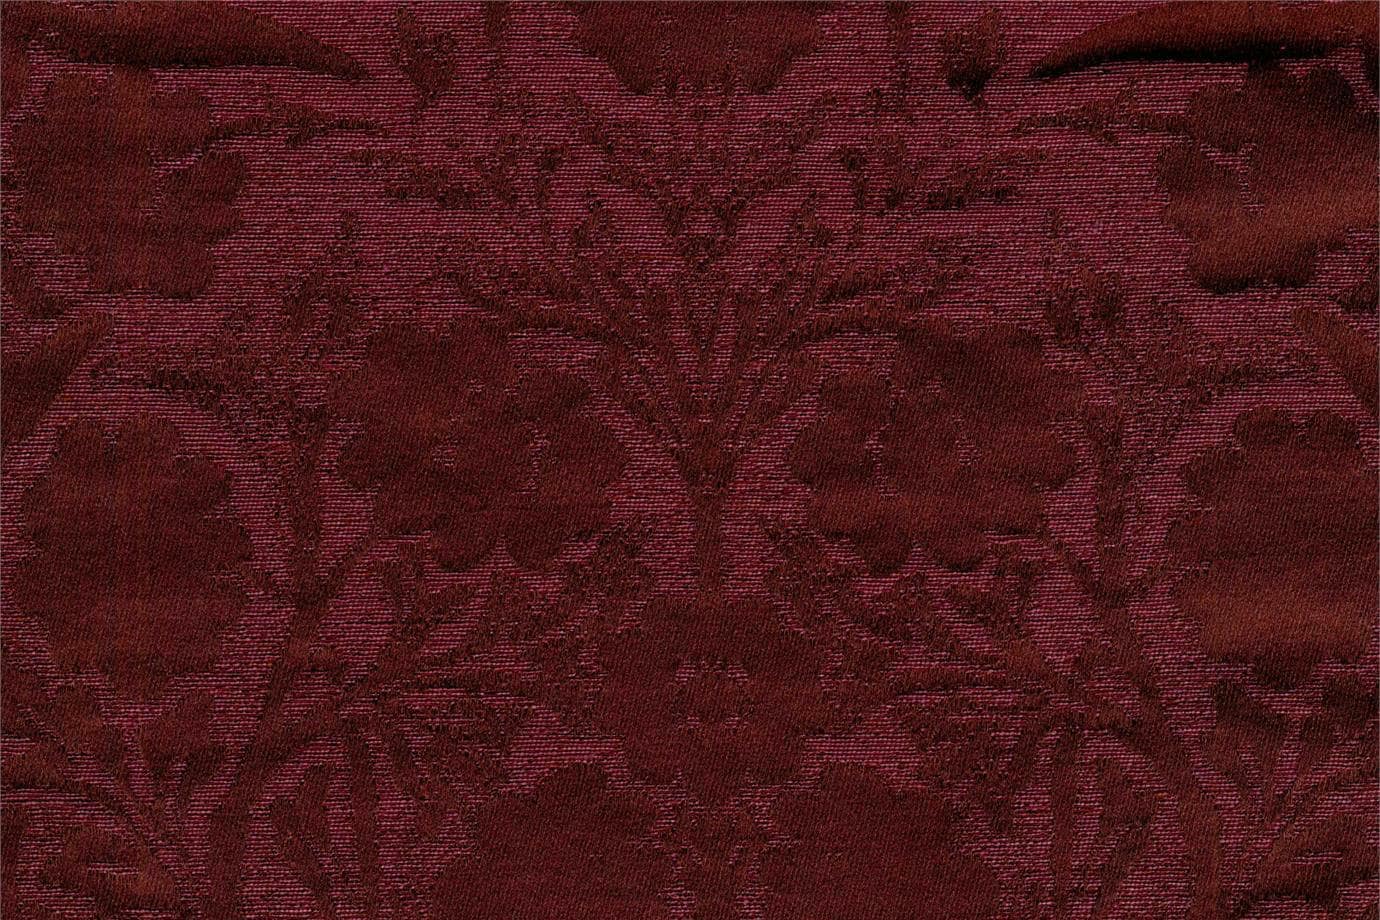 J3818 SANDY 008 Bordeaux home decoration fabric